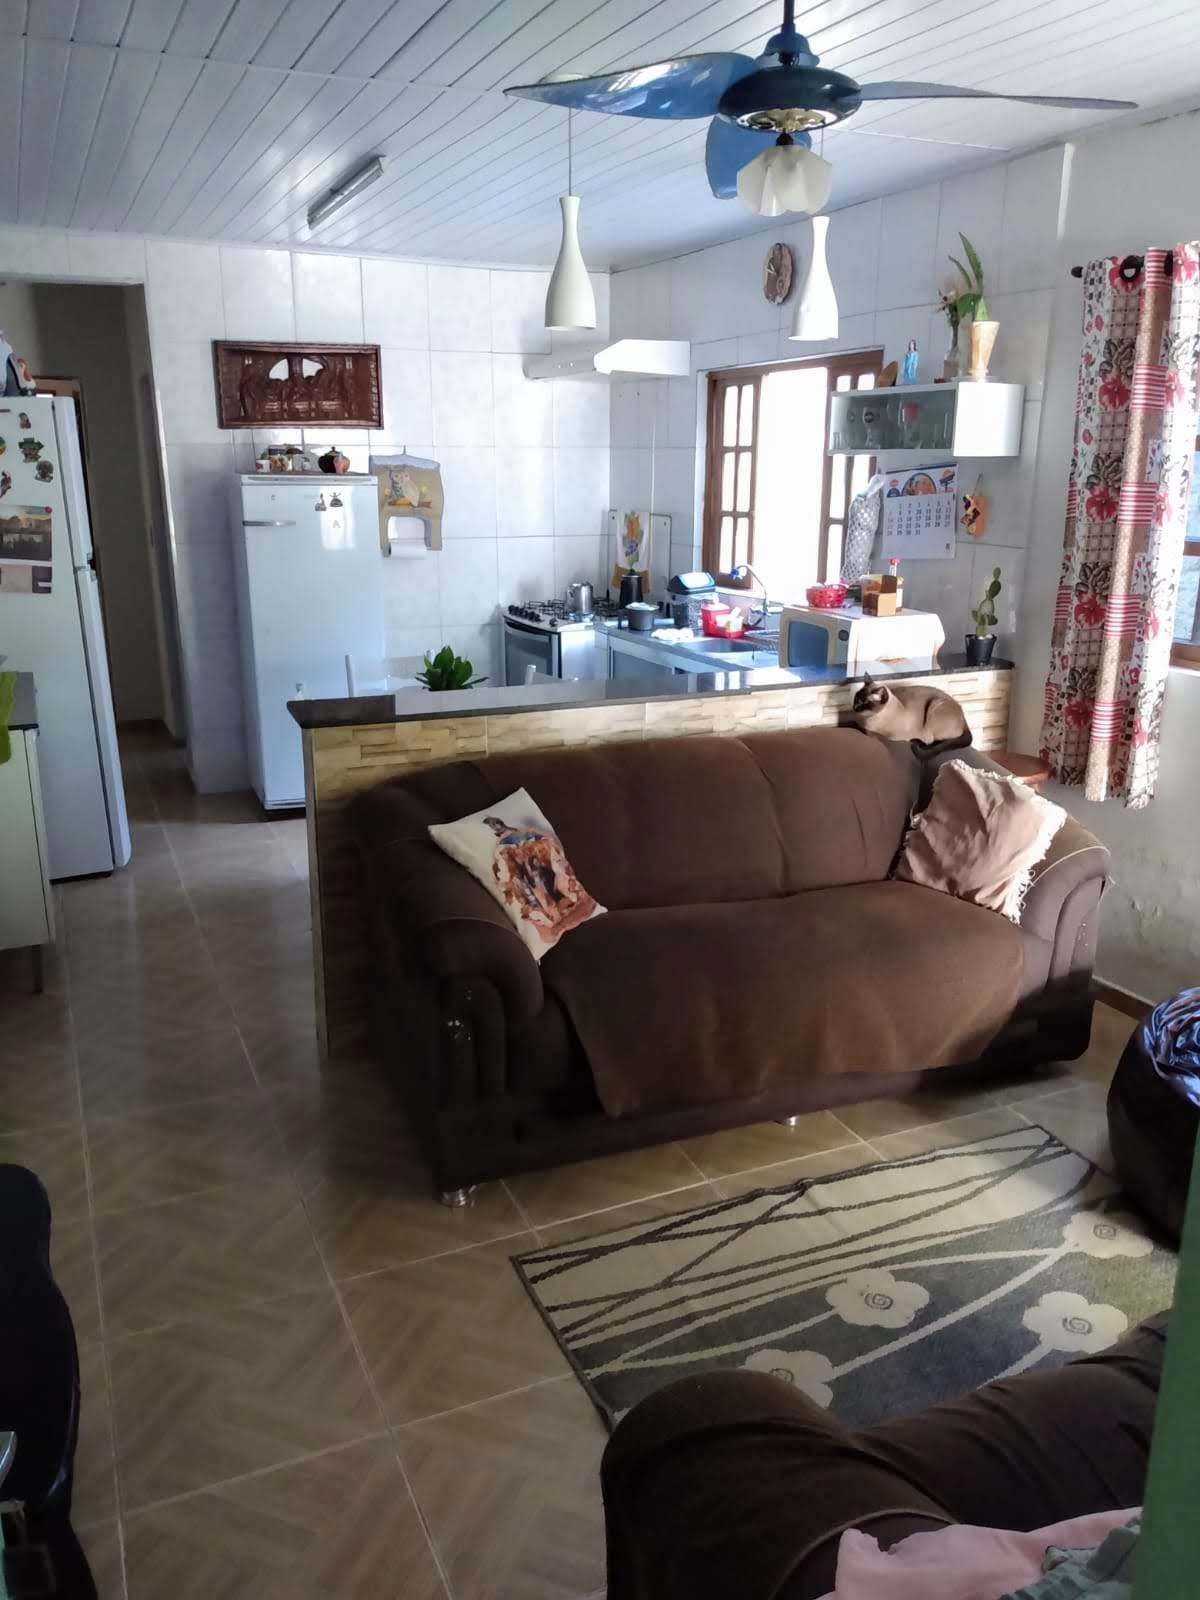 Casa em Mongaguá 3 quartos, uma suíte, sala, cozinha estilo americana, 2 banheiros social, churrasqueira   | código 1061